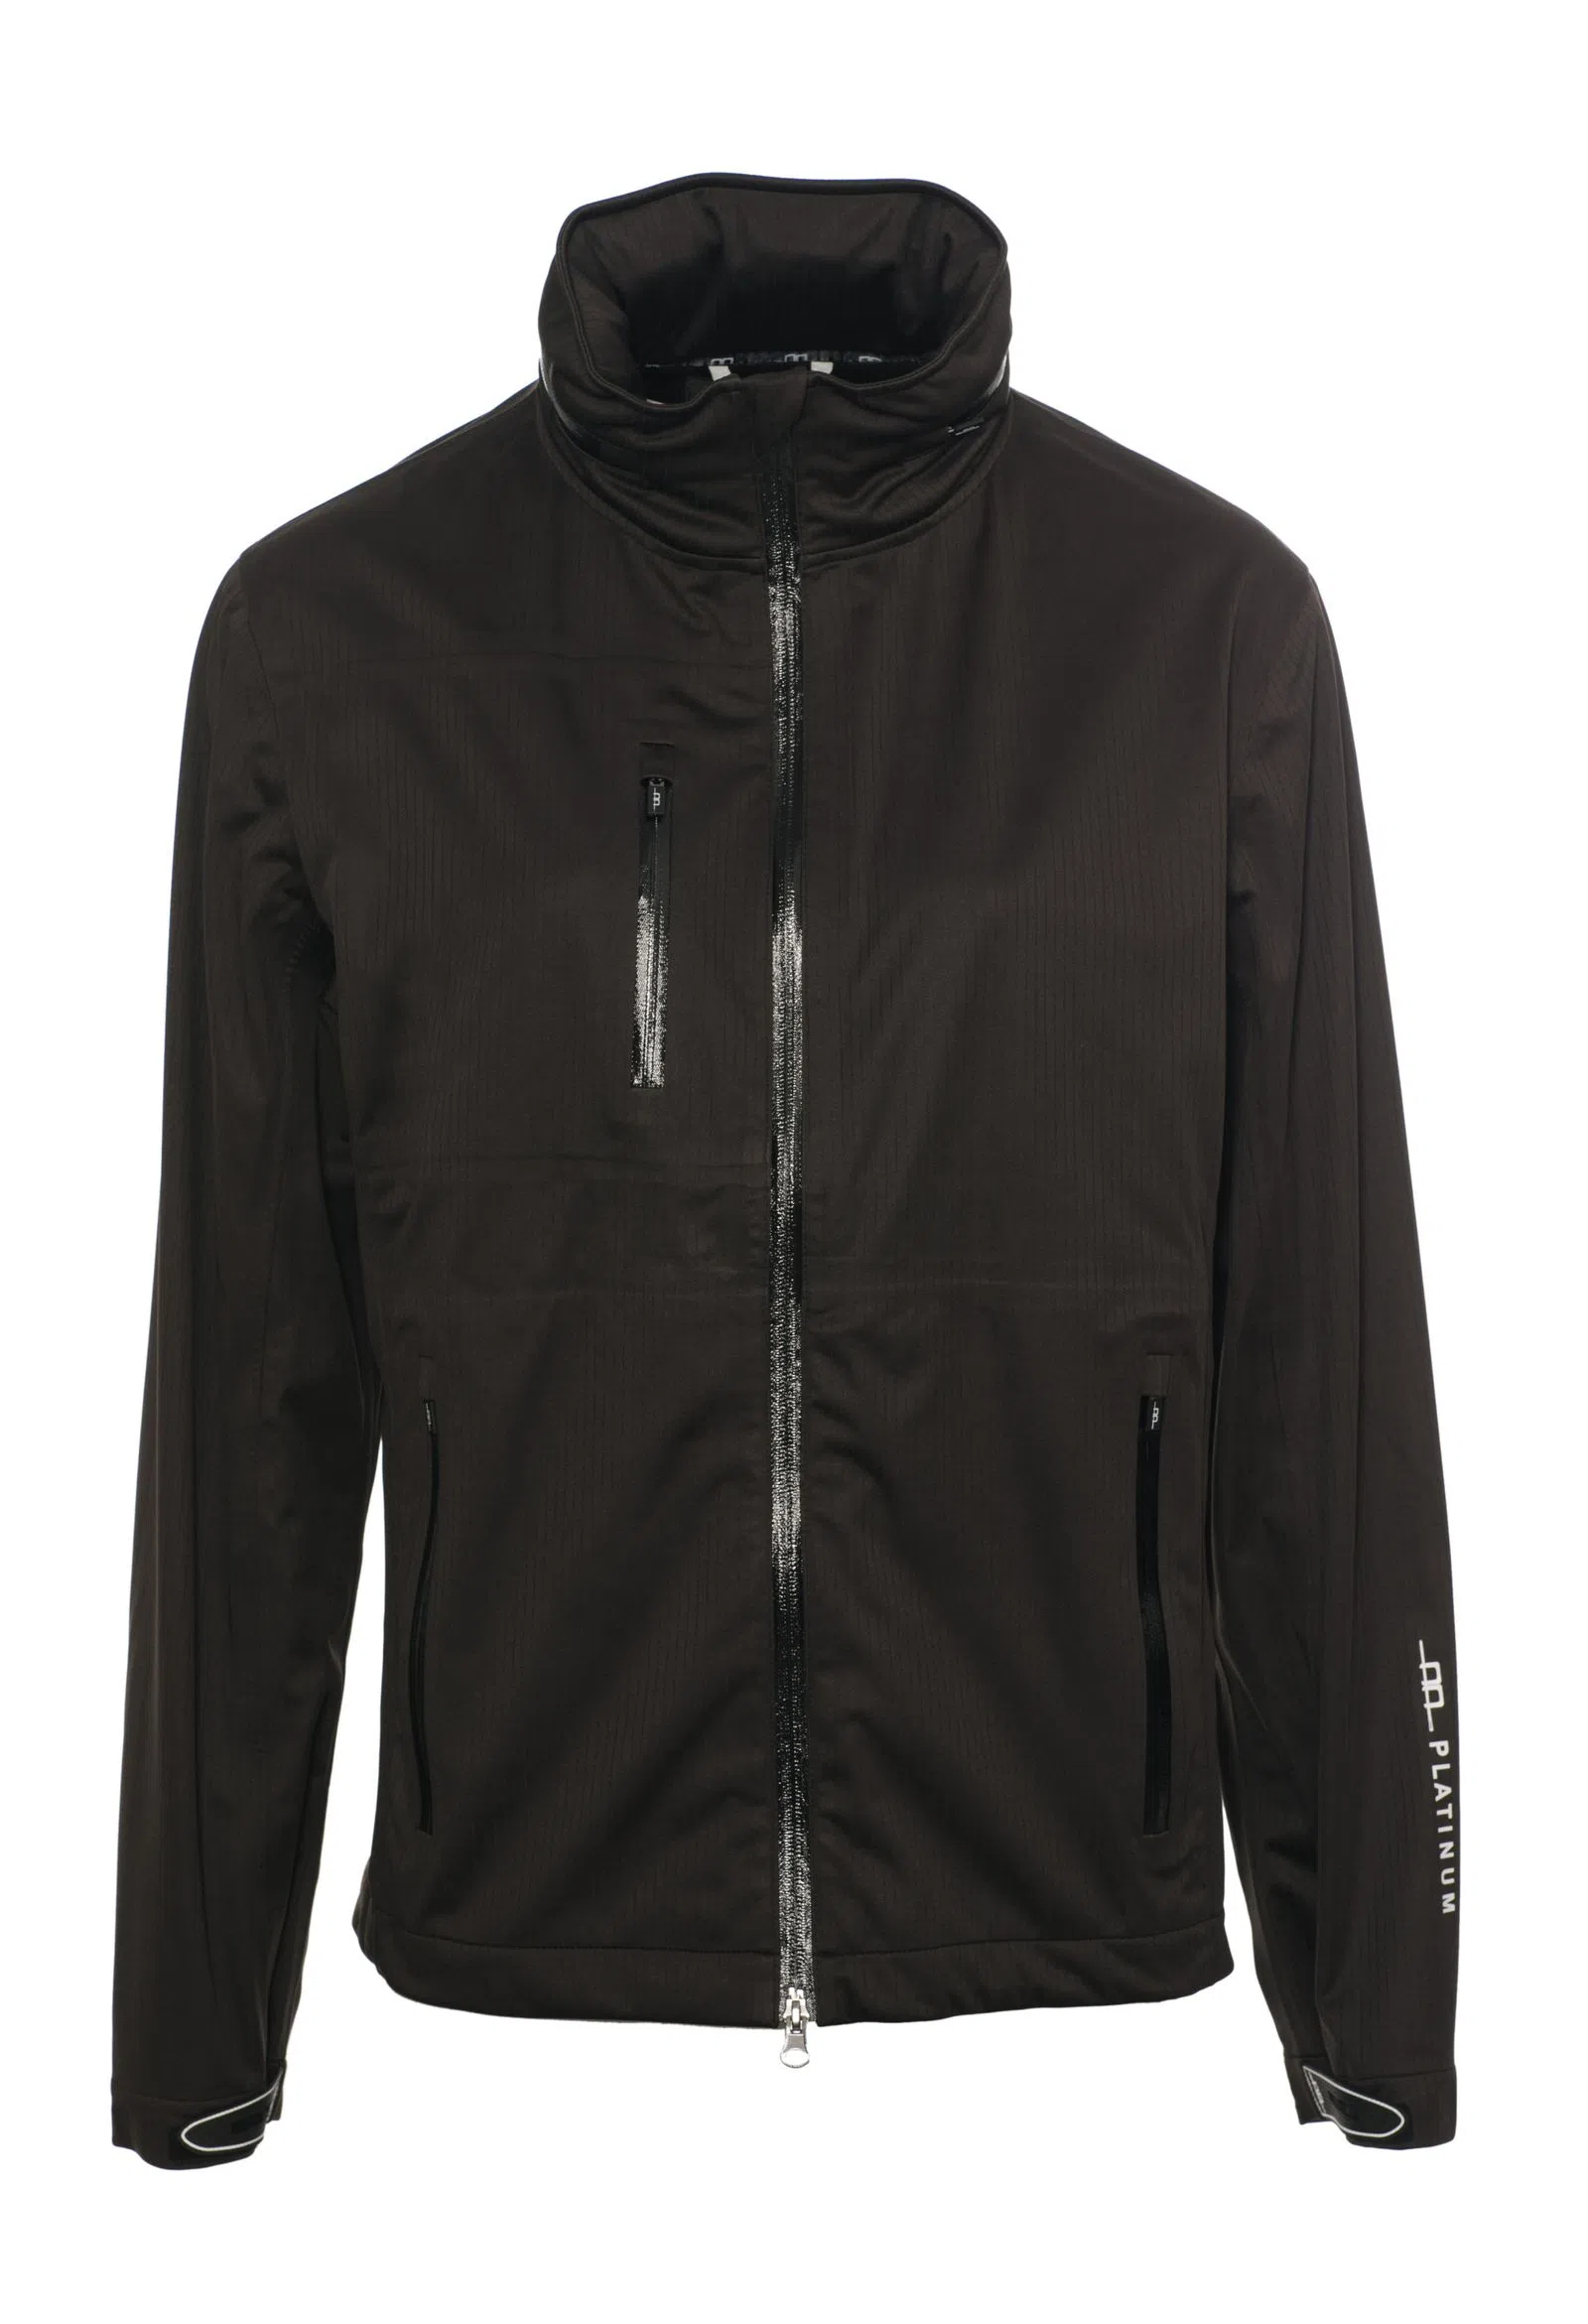 Mens rain jacket, Milis All-Year-Jacket, waterproof, black